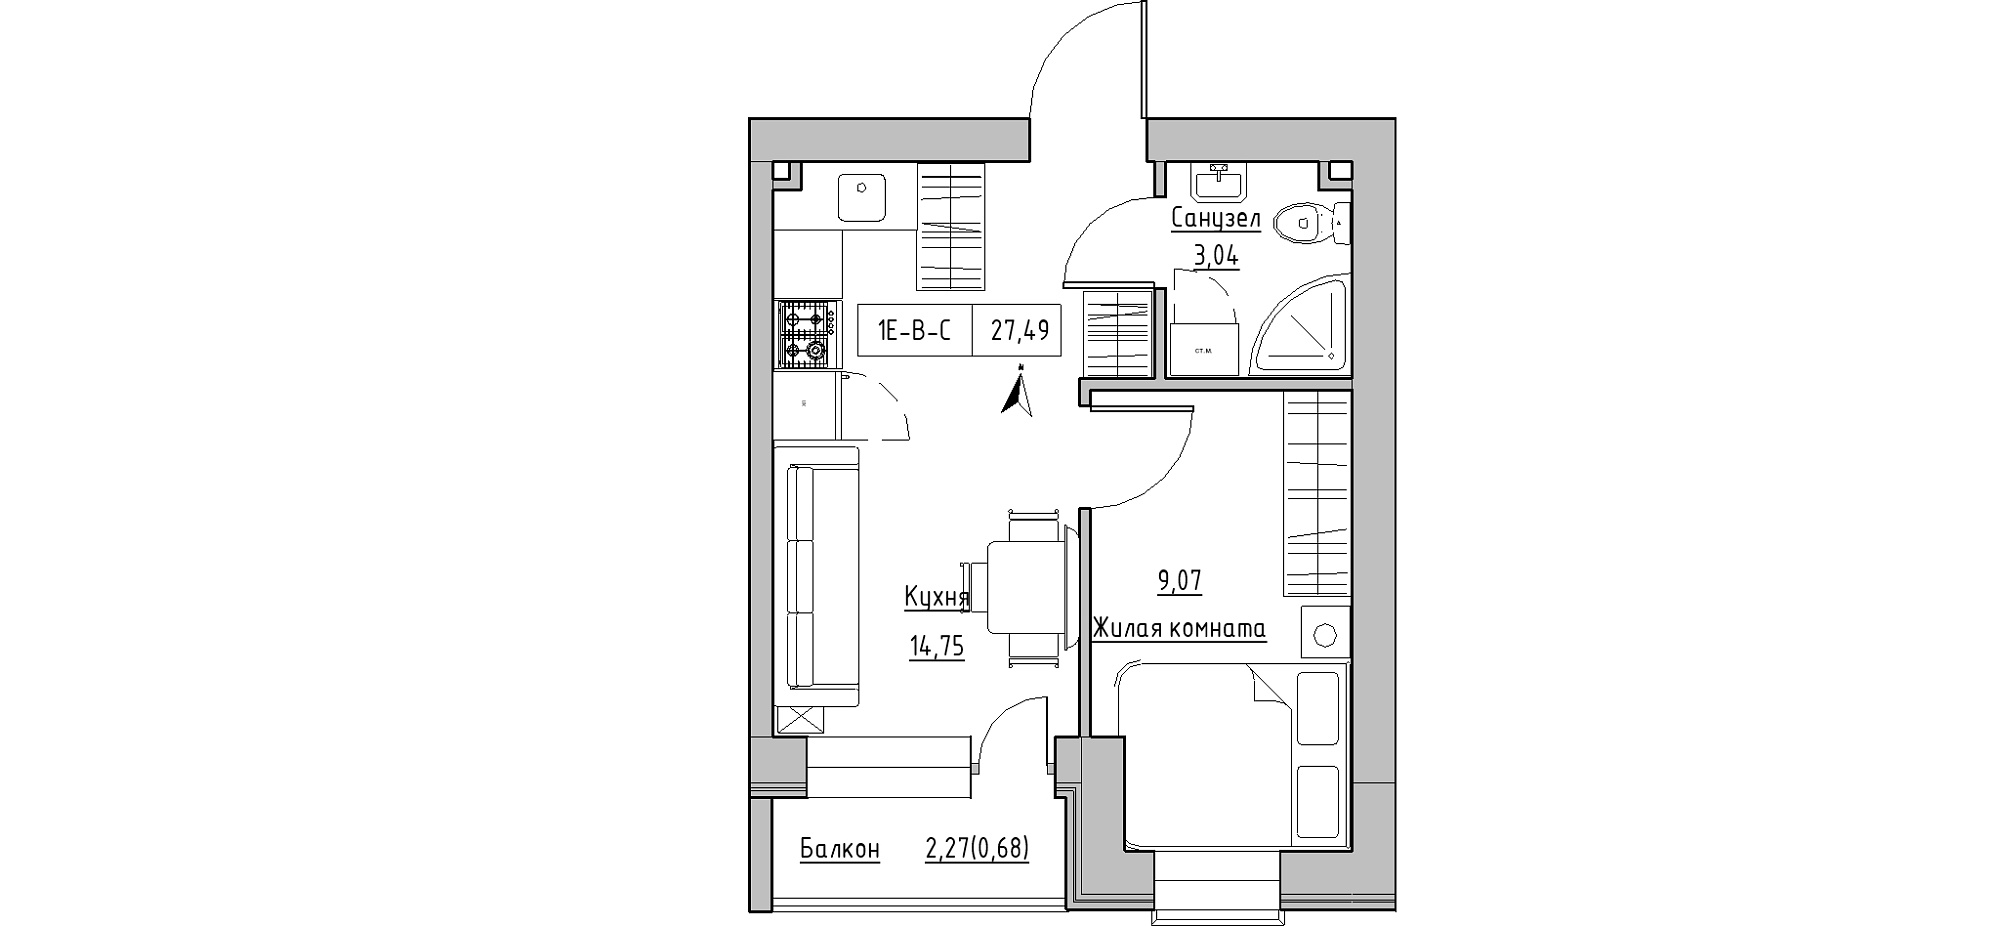 Планировка 1-к квартира площей 27.49м2, KS-020-05/0007.